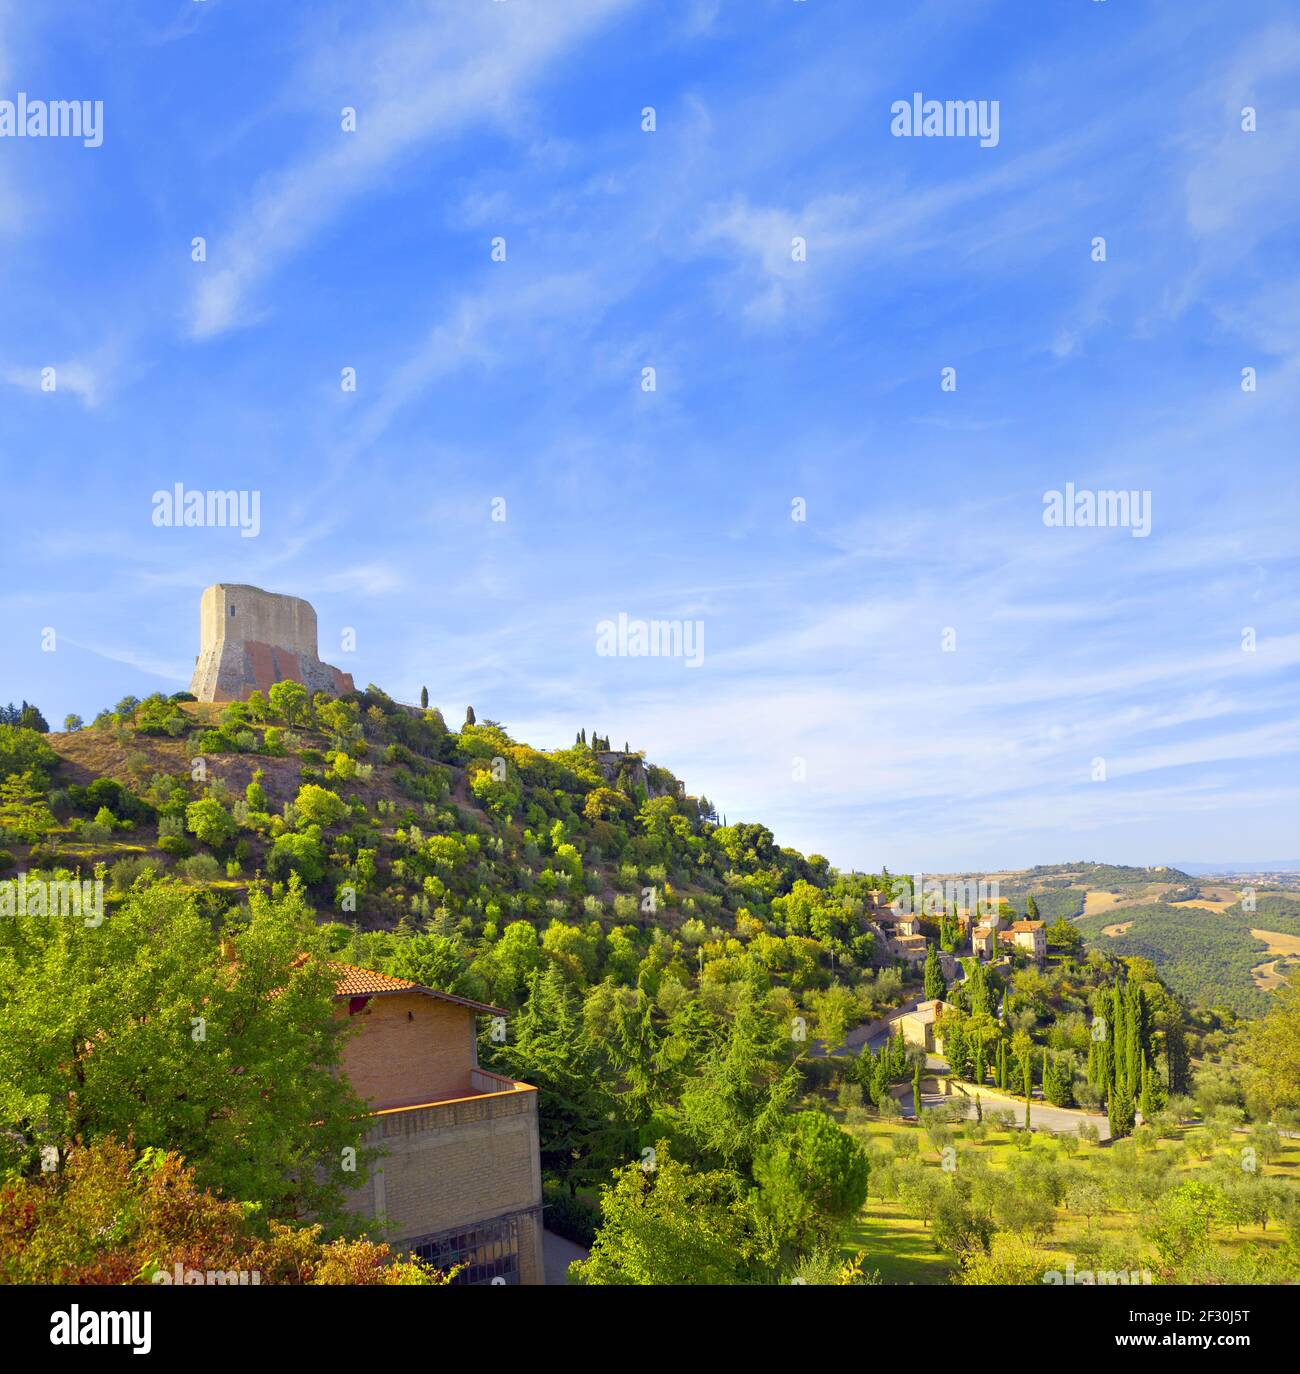 Sehenswürdigkeiten in der Toskana: Rocca di Tentennano. Italien. Stockfoto